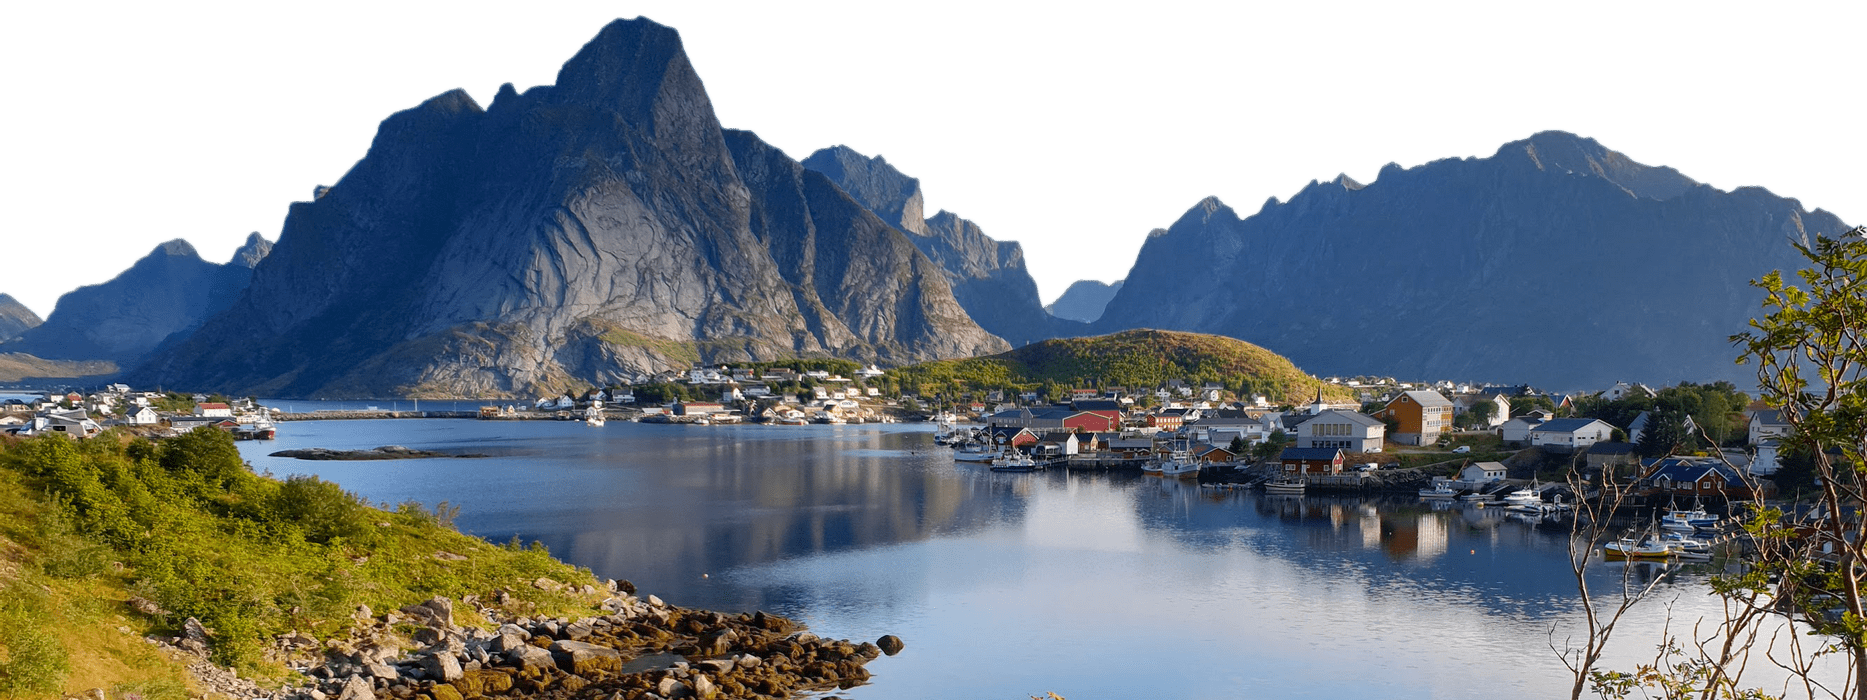 Panorama delle Lofoten in Norvegia, montagne e casette rosse che si affacciano su uno specchio di acqua